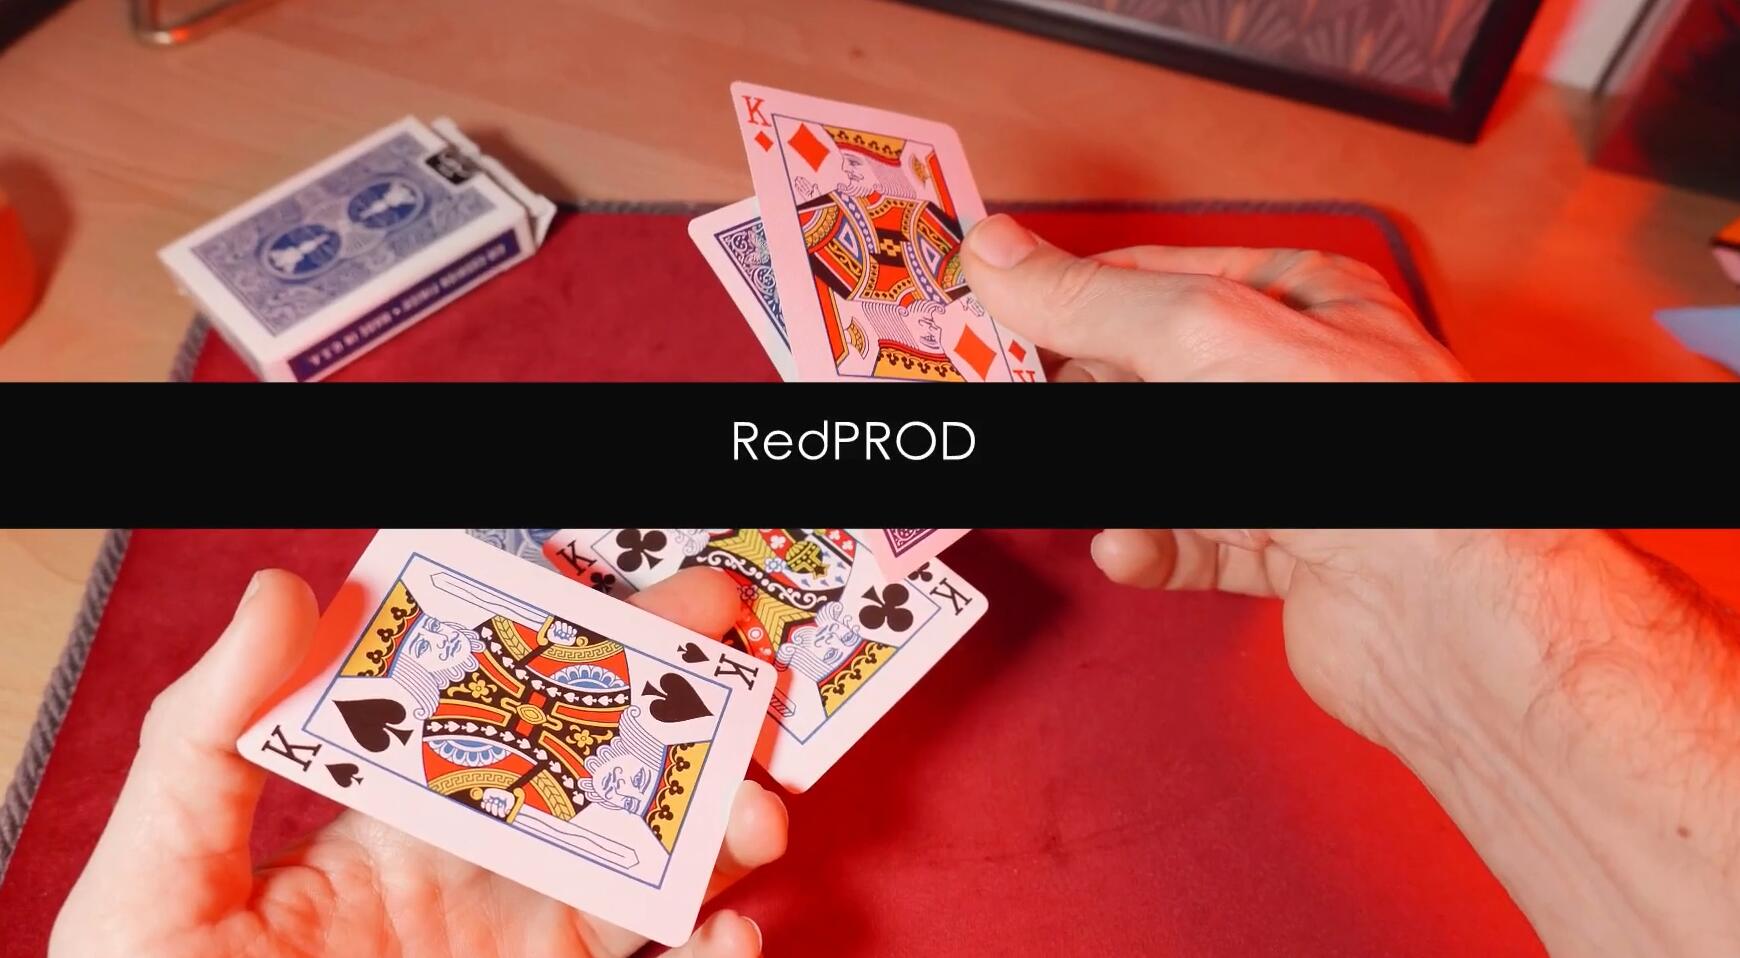 RedProd by Yoann Fontyn (Mp4 Video Download 720p High Quality)